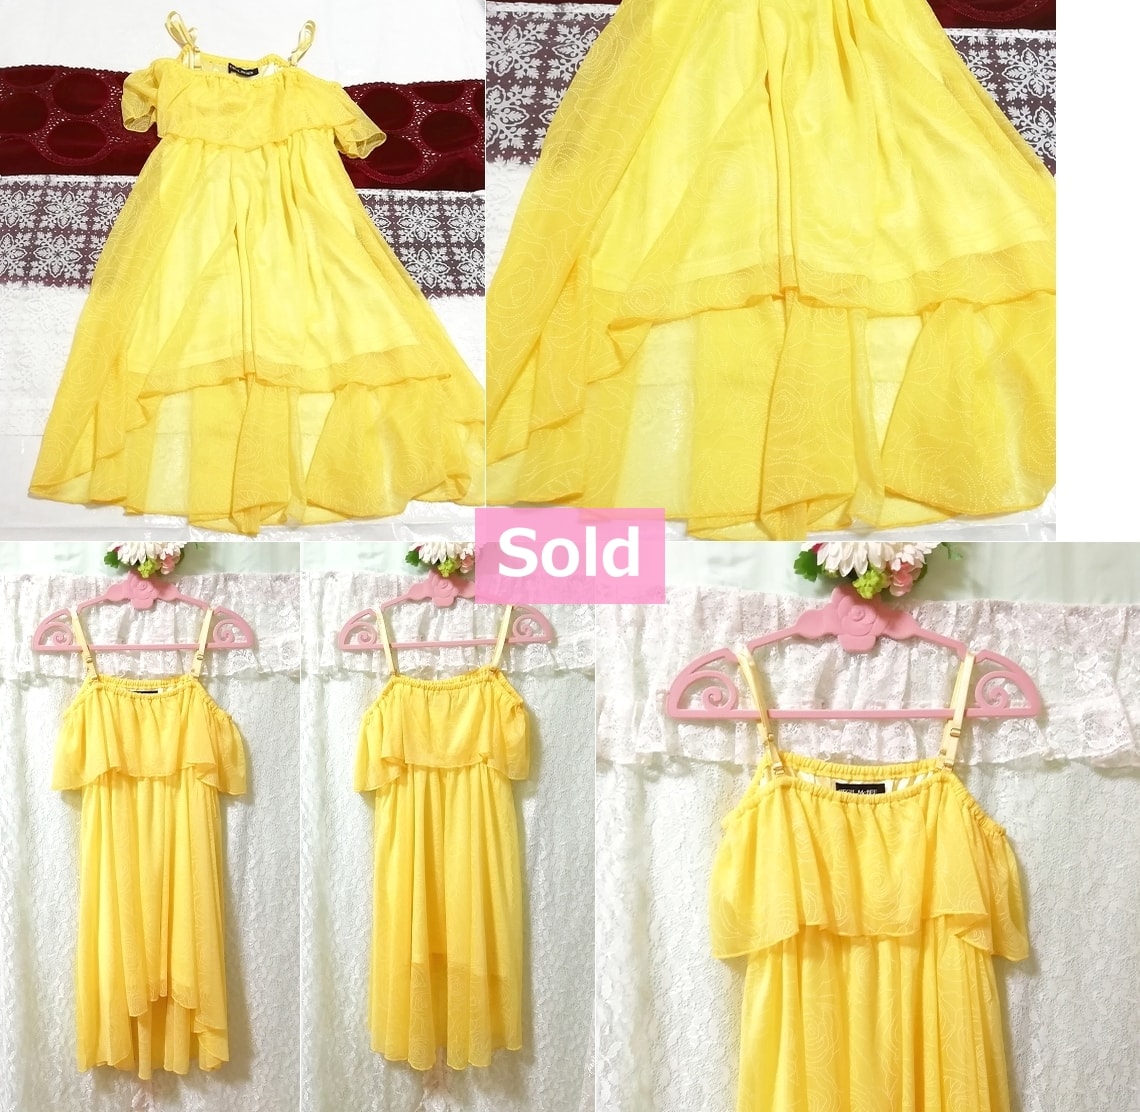 فستان بروتيل شيفون أصفر من سيسيل ماكبي ، قطعة واحدة